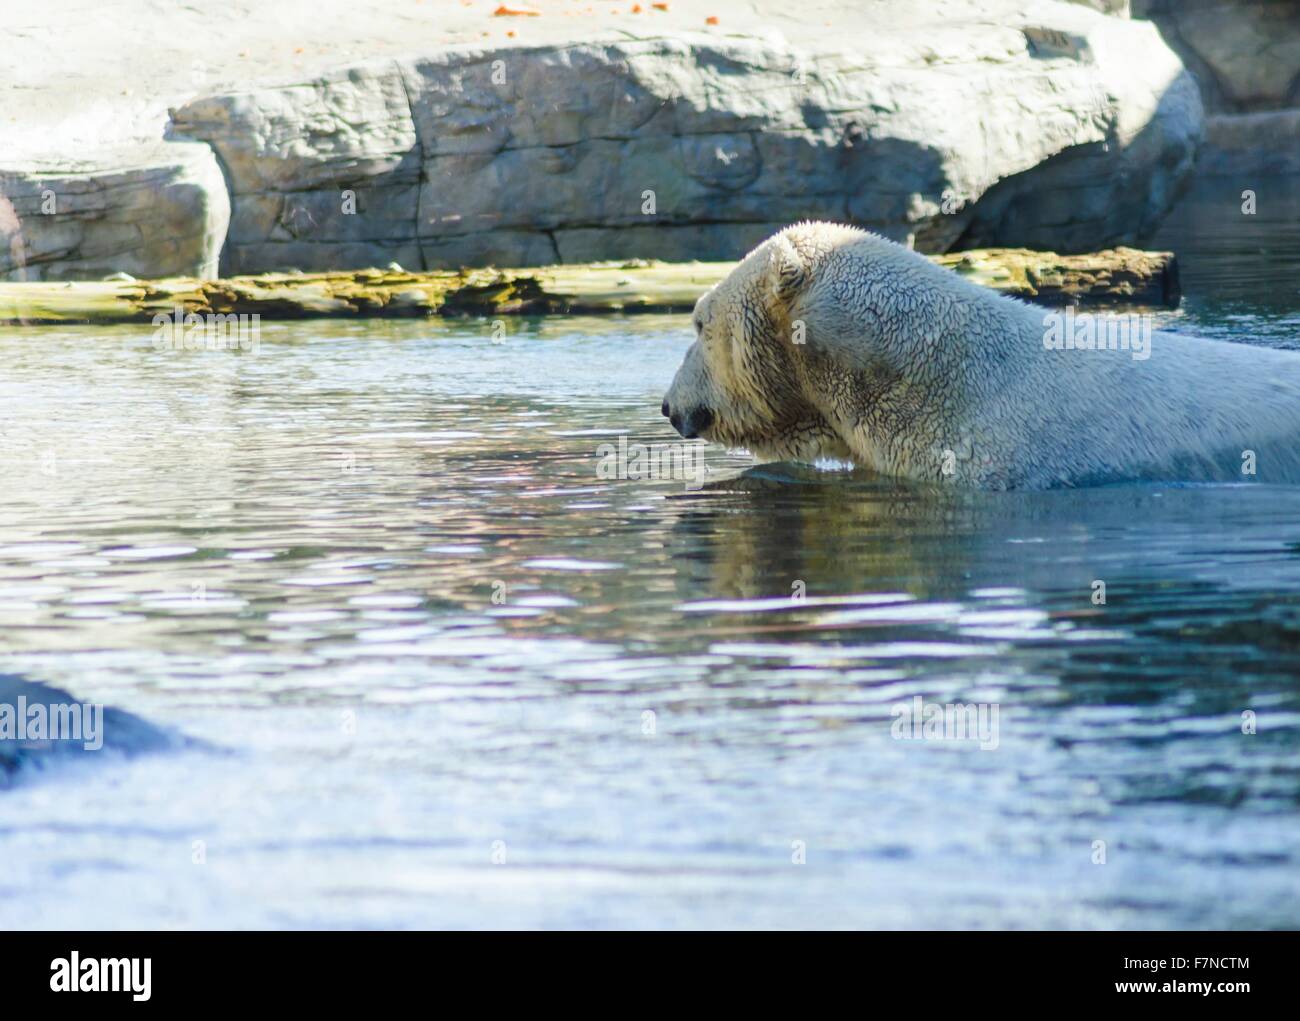 Un bianco polar bear emersa nella piscina di acqua con la sua testa sulla superficie utilizzando le sue zampe anteriori anteriori per la propulsione. Foto Stock